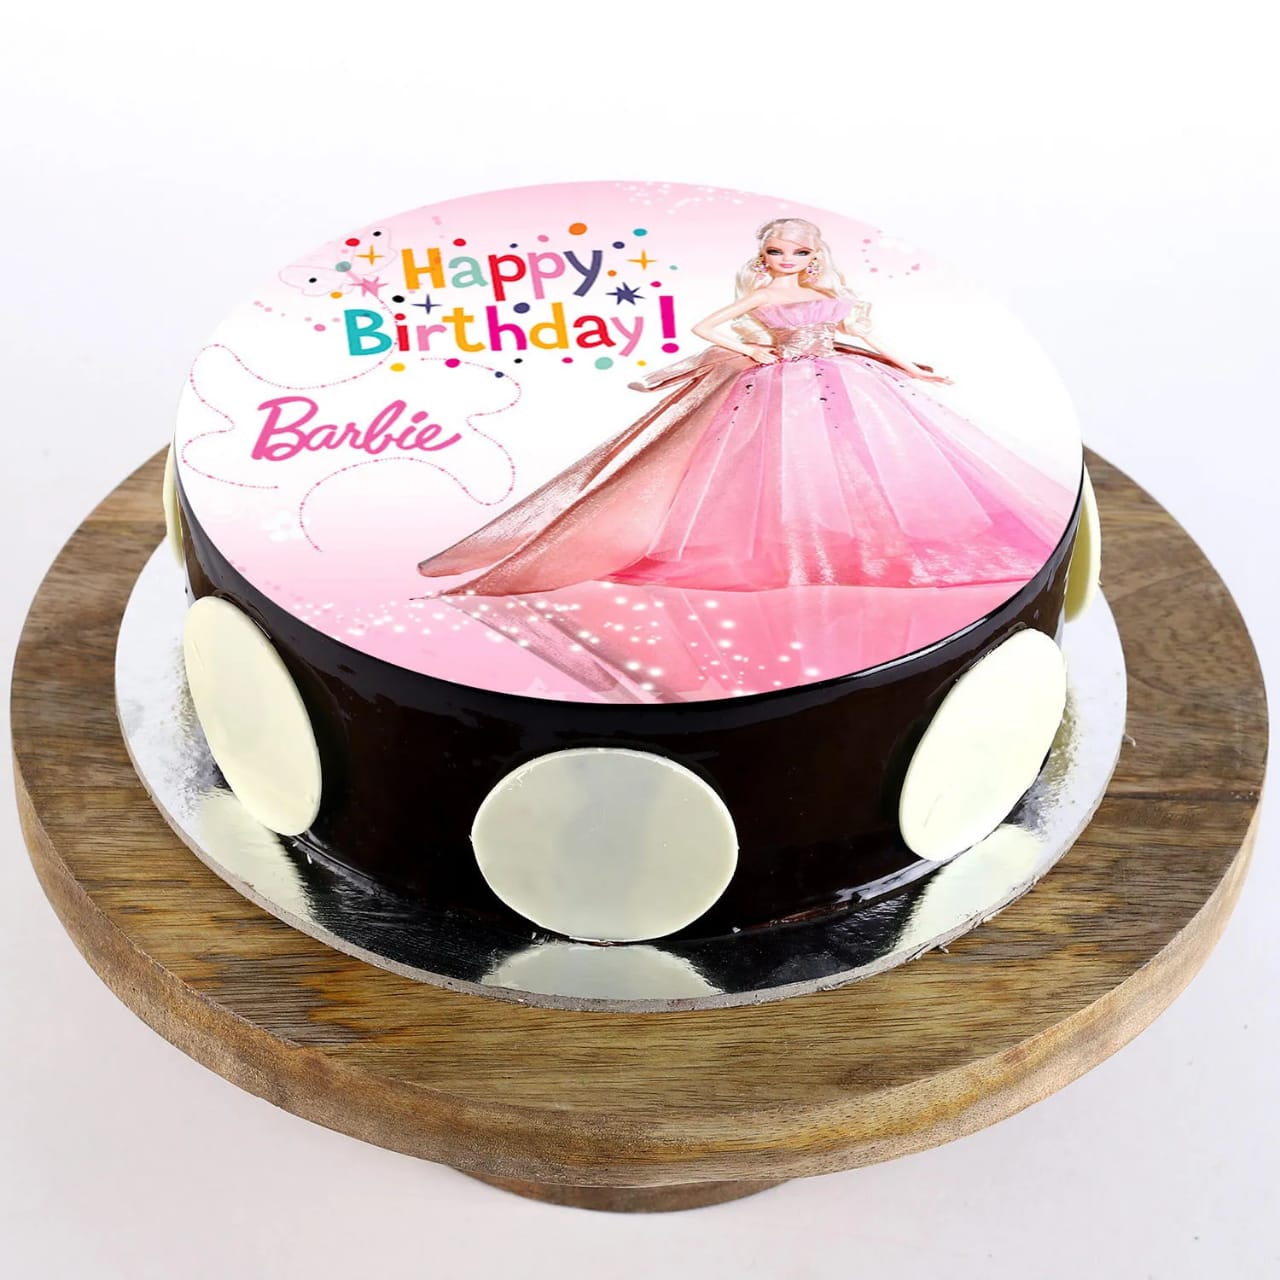 Category: Barbie - Piece of Cake Tin Hire Porirua, Wellington